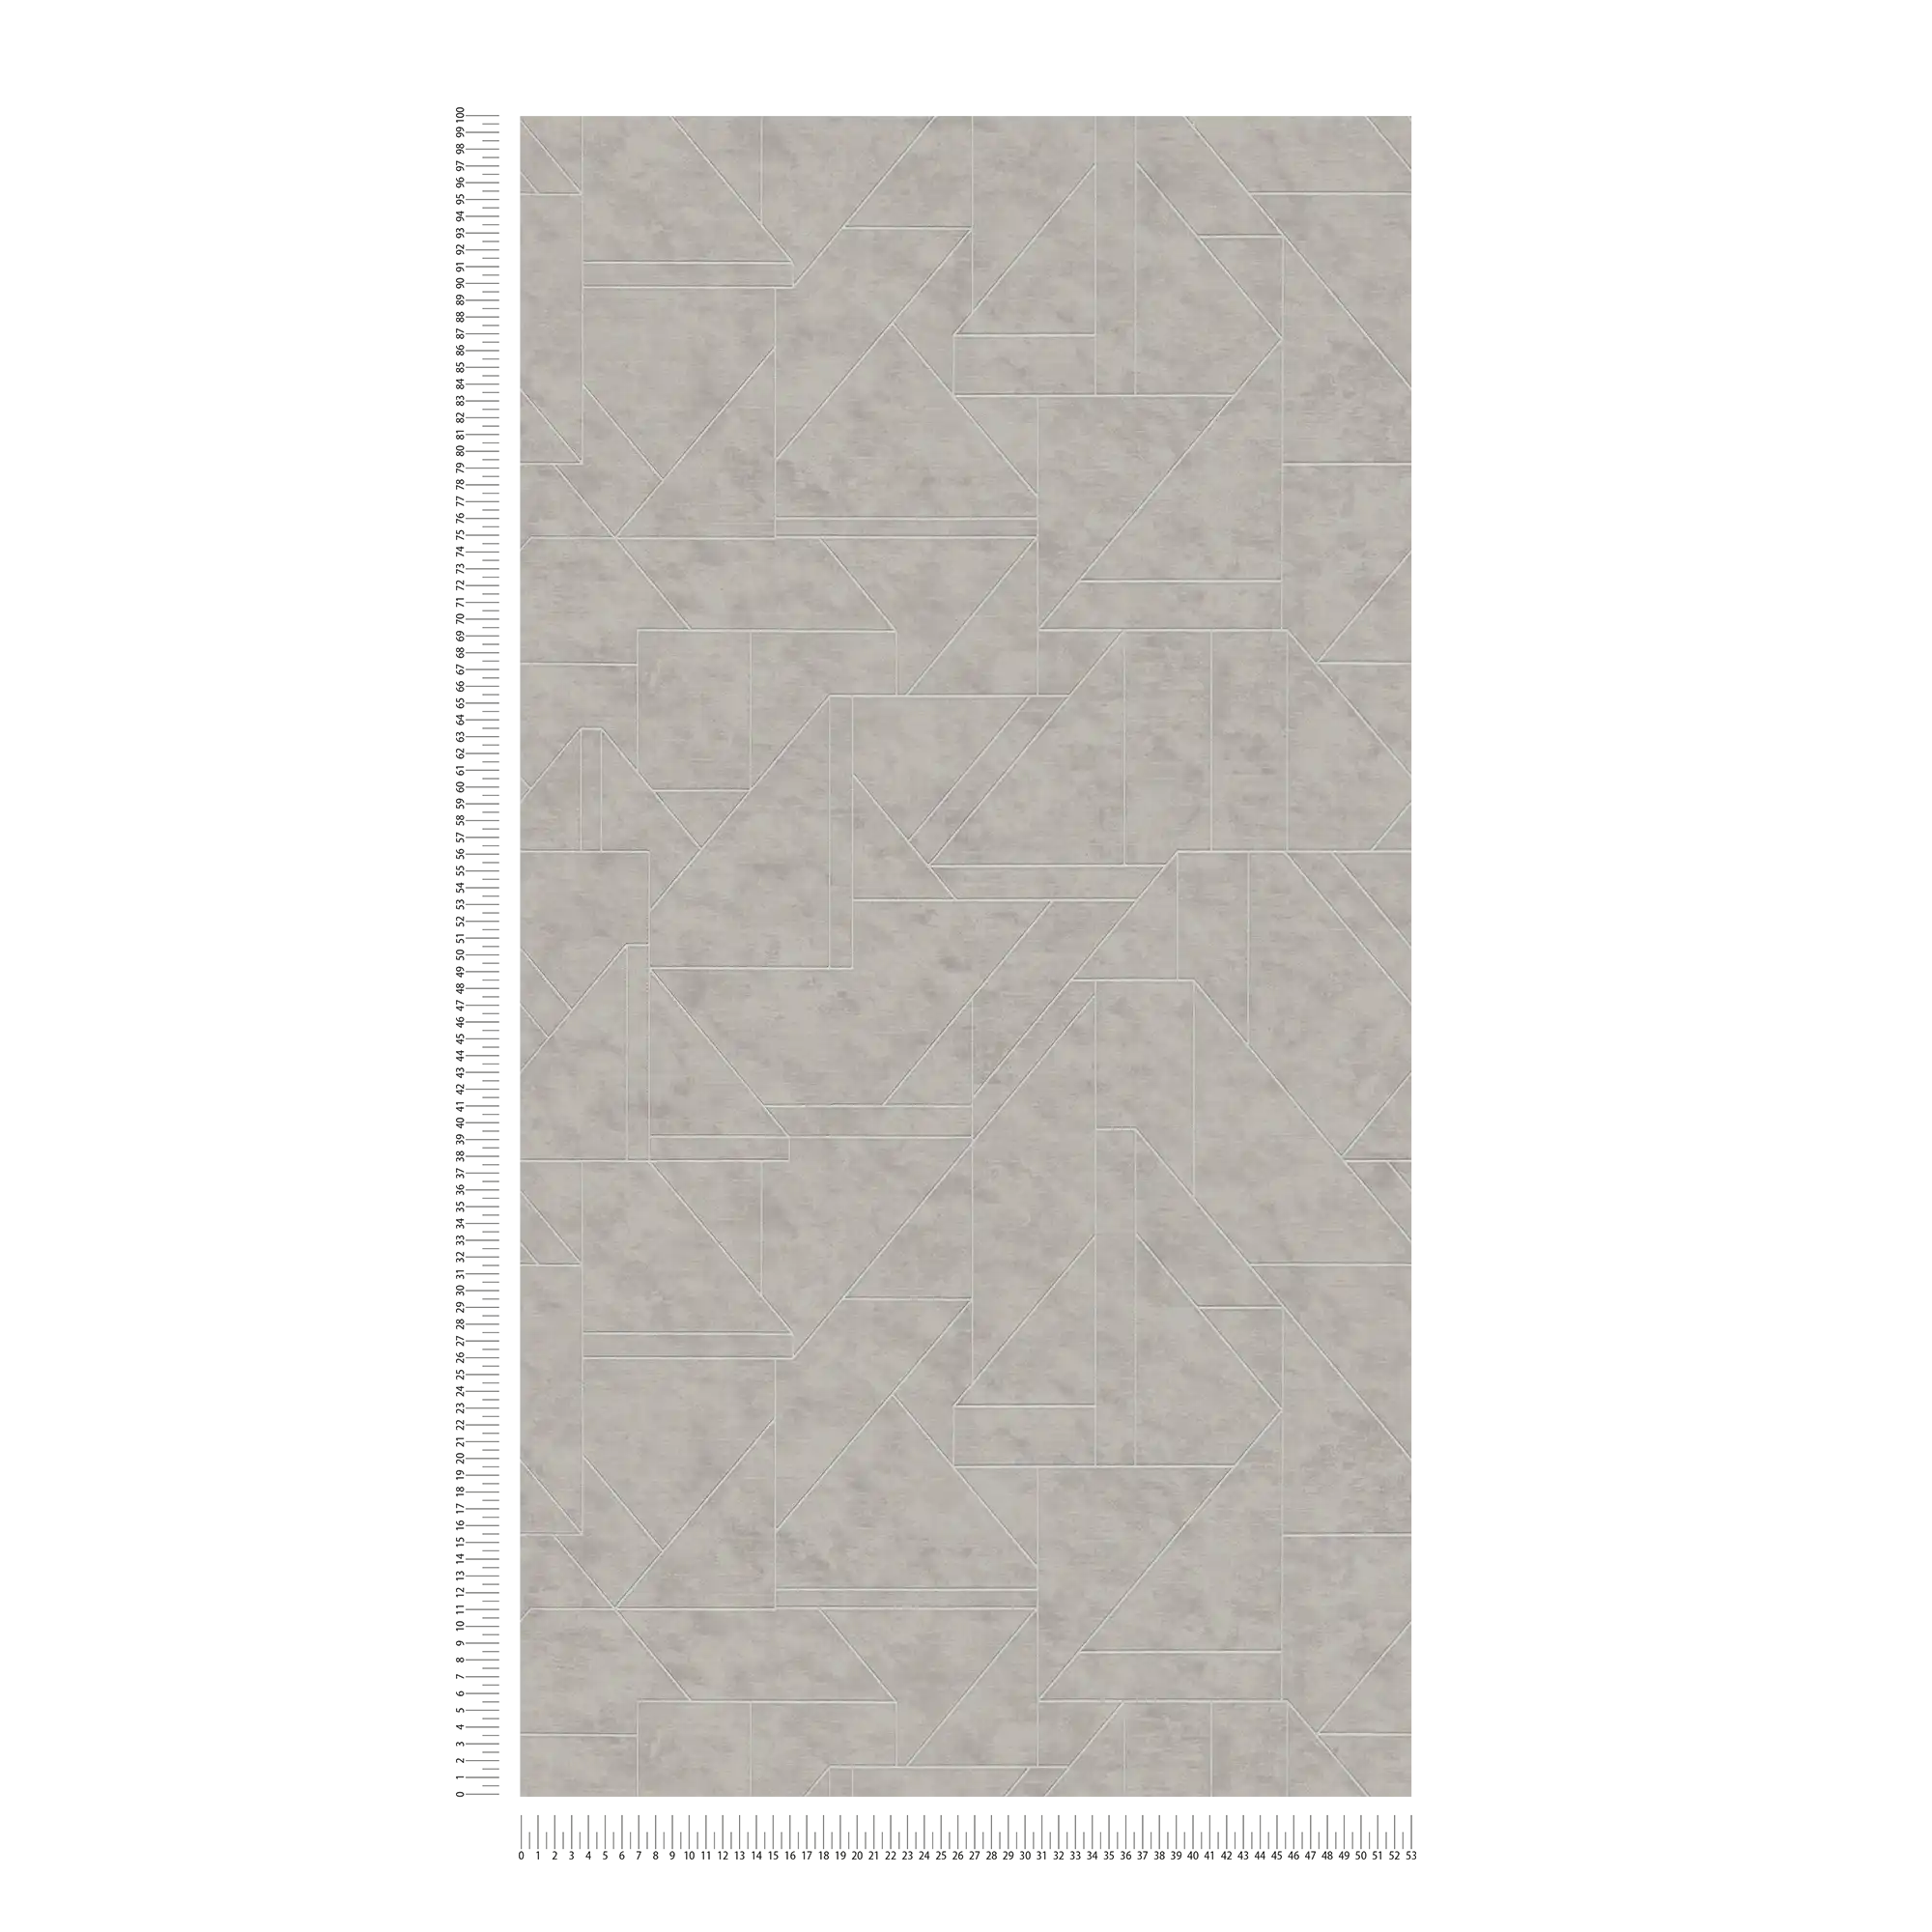             Papier peint intissé graphique à motifs de lignes - gris, argenté
        